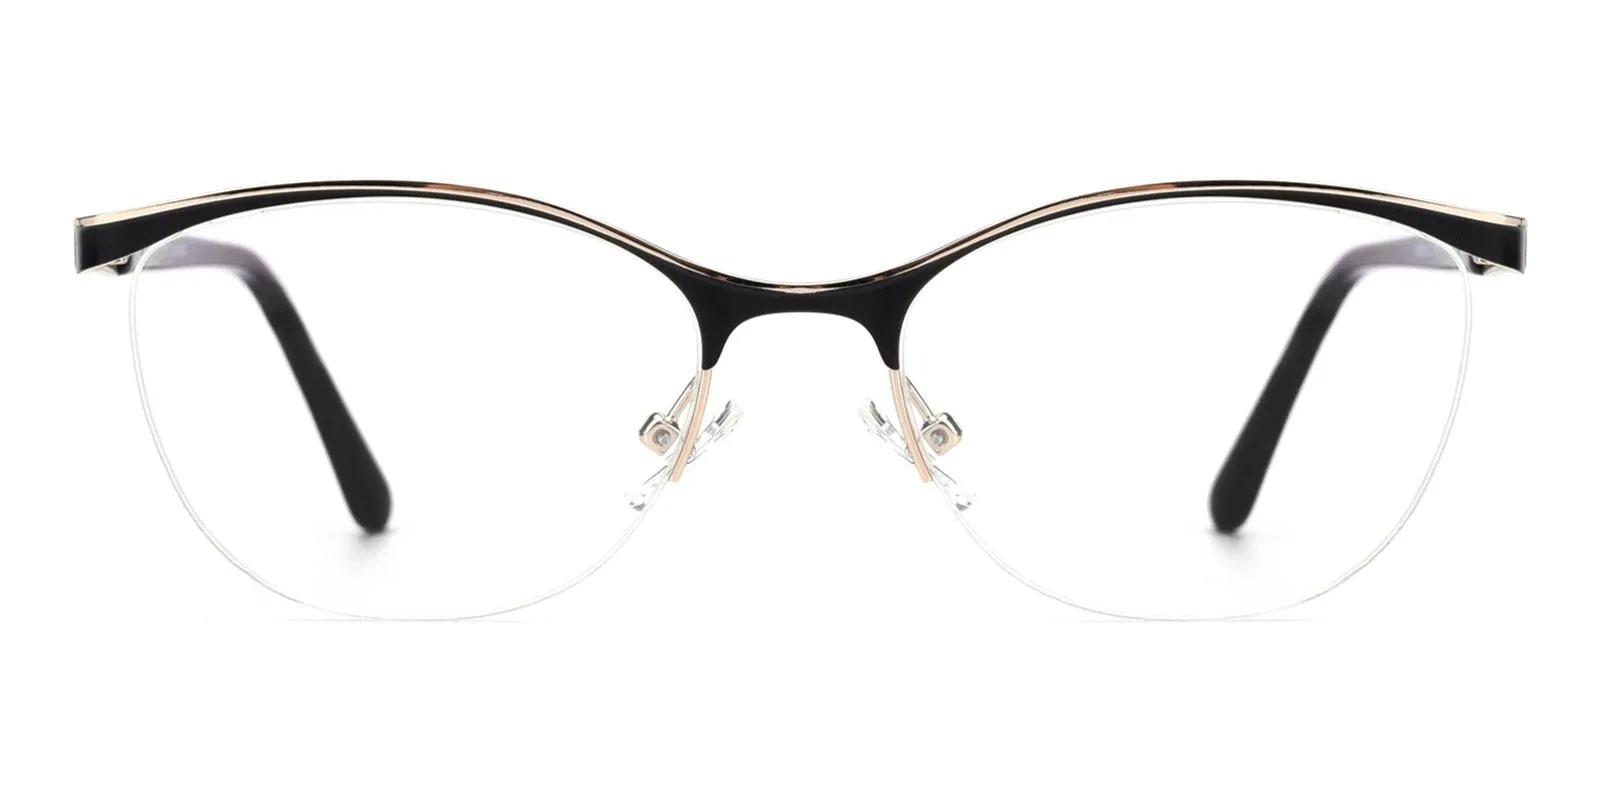 Offor Black Metal Eyeglasses , NosePads Frames from ABBE Glasses